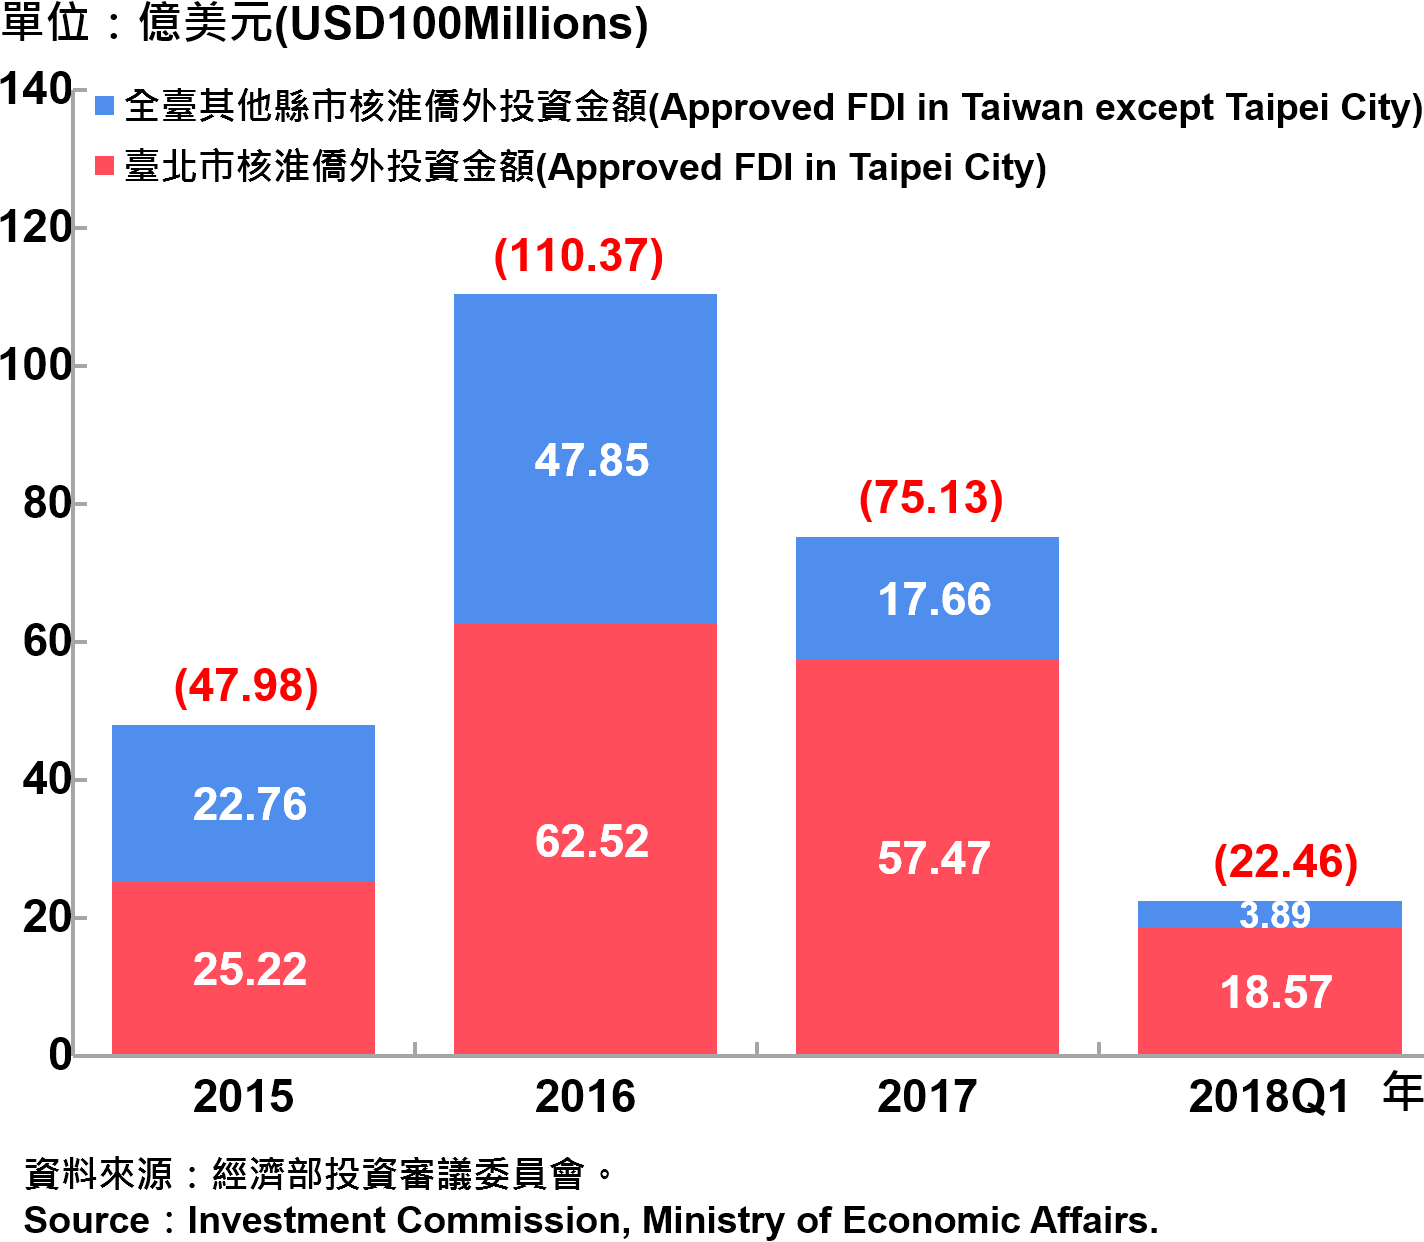 臺北市與全國僑外投資金額—2018Q1 Foreign Direct Investment （FDI） in Taipei City and Taiwan—2018Q1